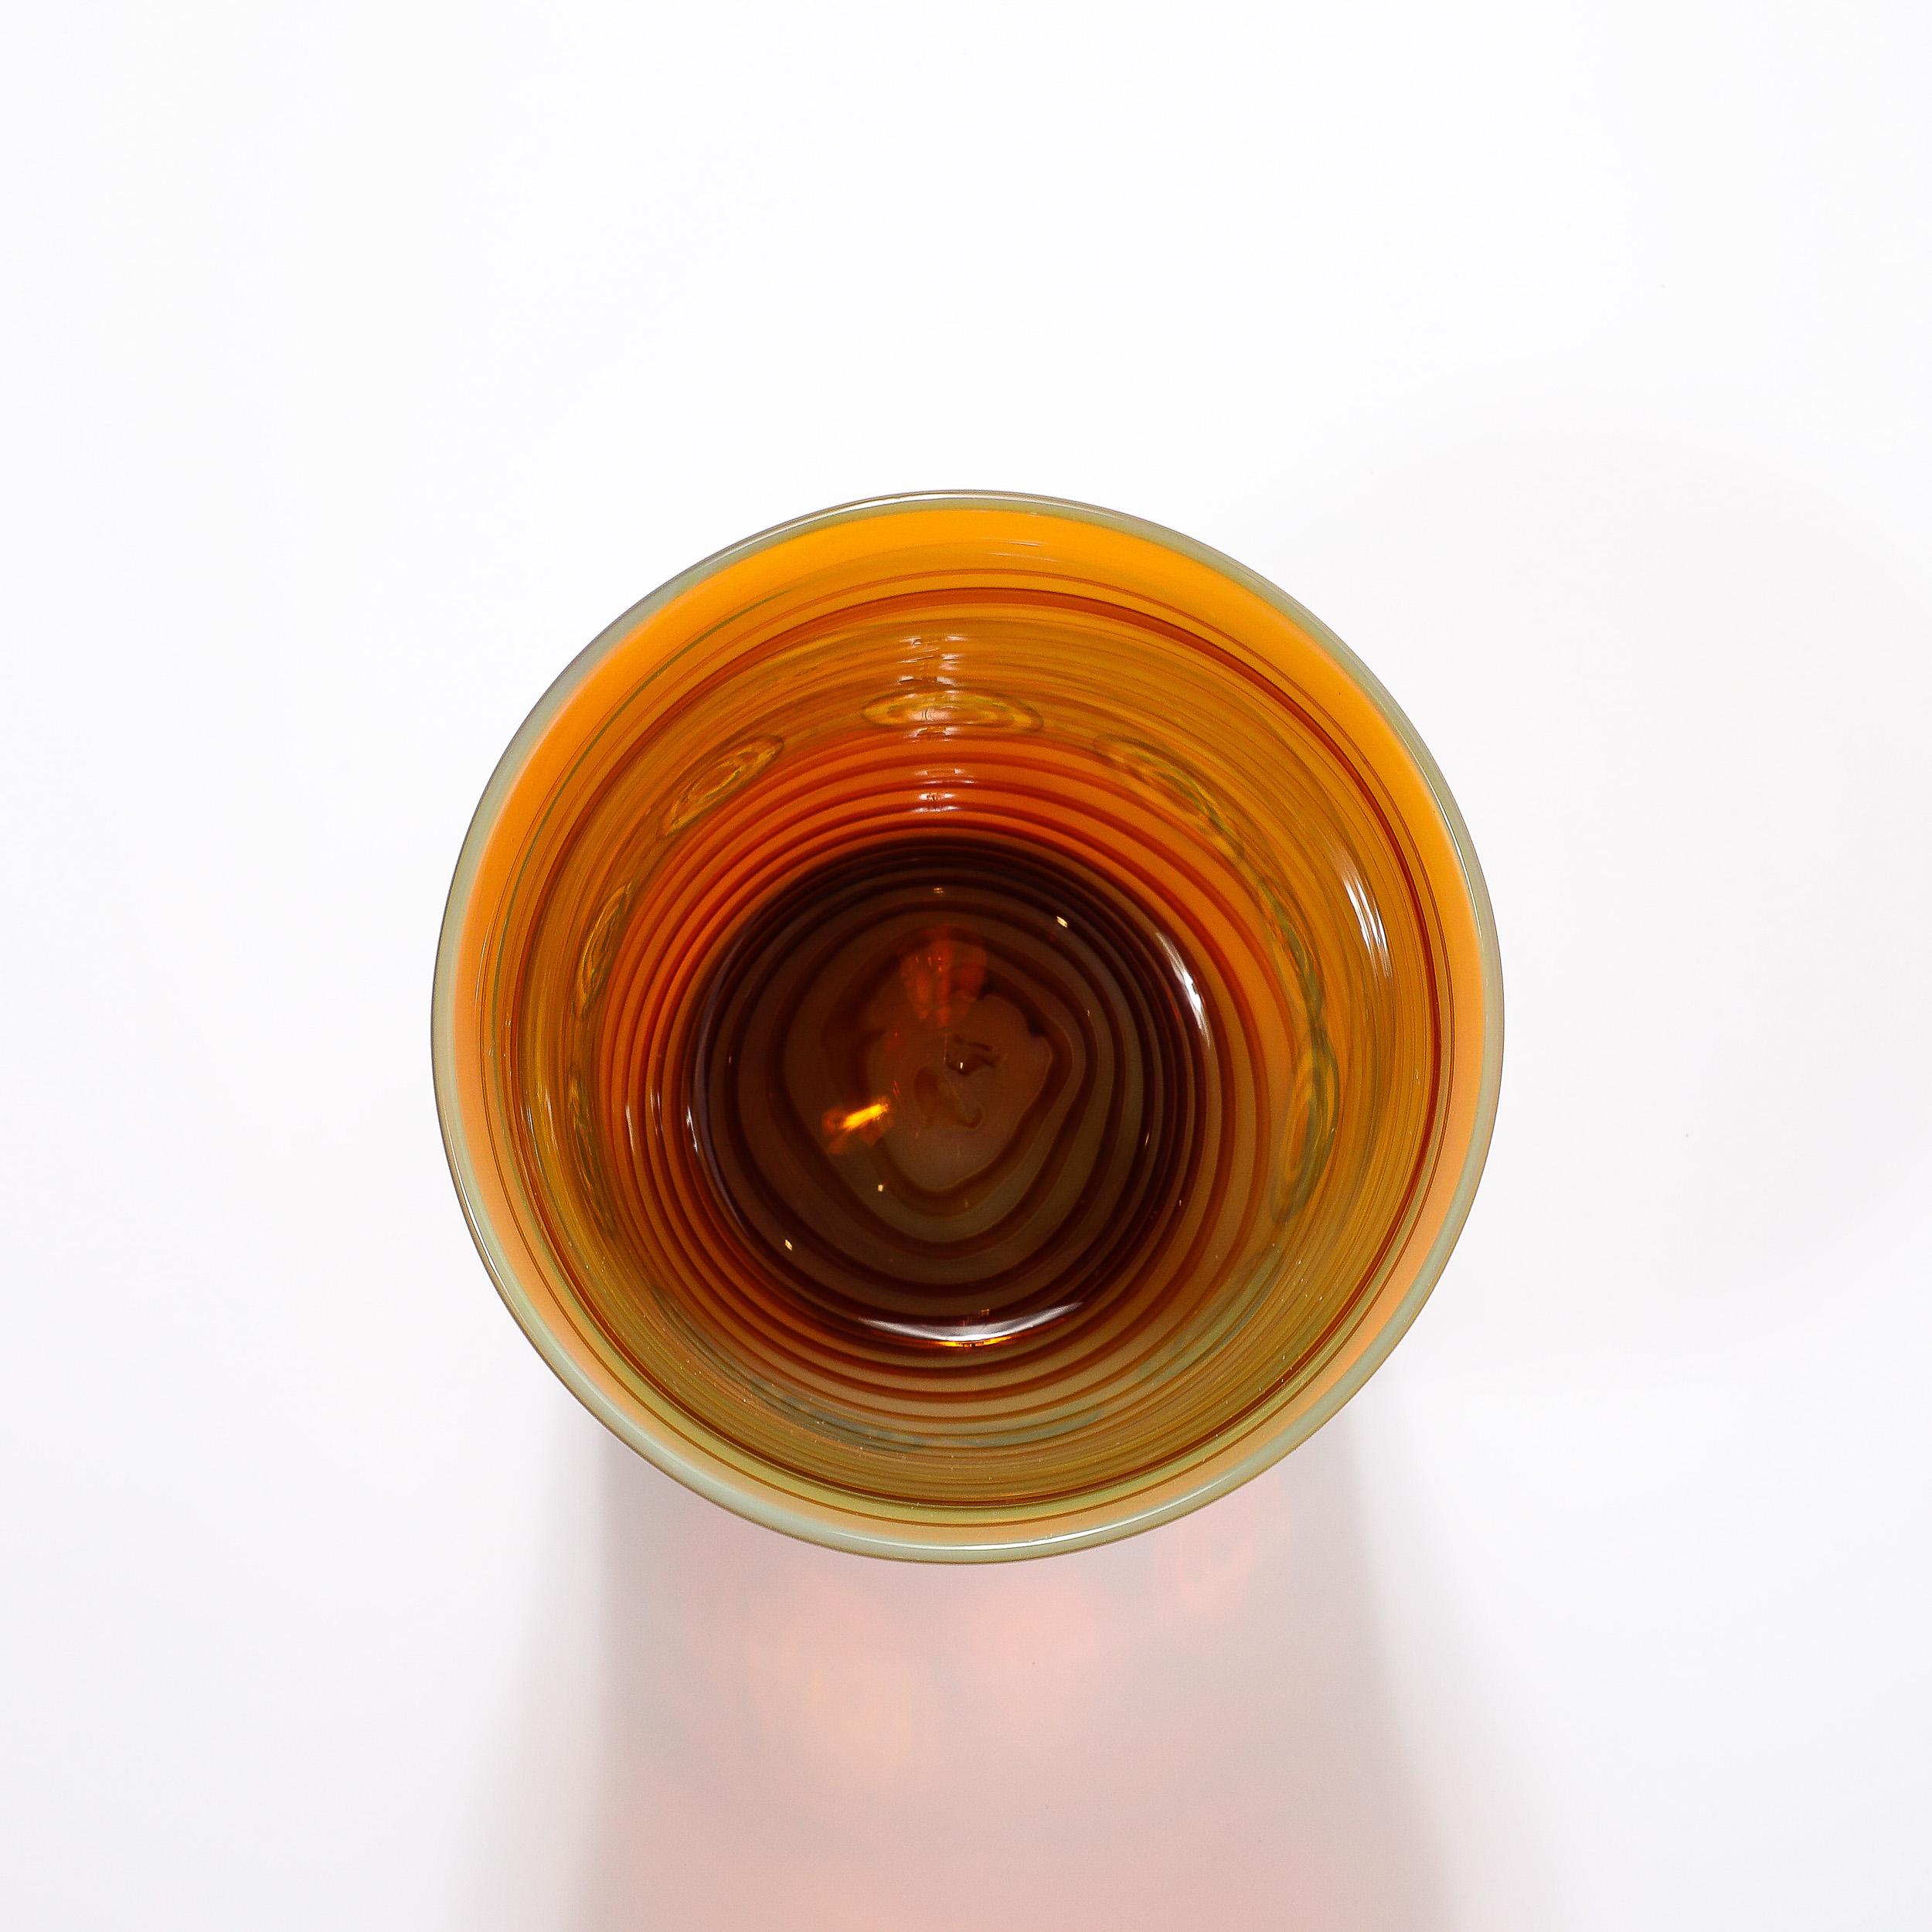 Ce magnifique vase en verre de Murano soufflé à la main, de style moderniste du milieu du siècle, avec des bandes de citrine et des anneaux d'ambre, est originaire d'Italie et date de la seconde moitié du XXe siècle. Le vase présente une jolie forme